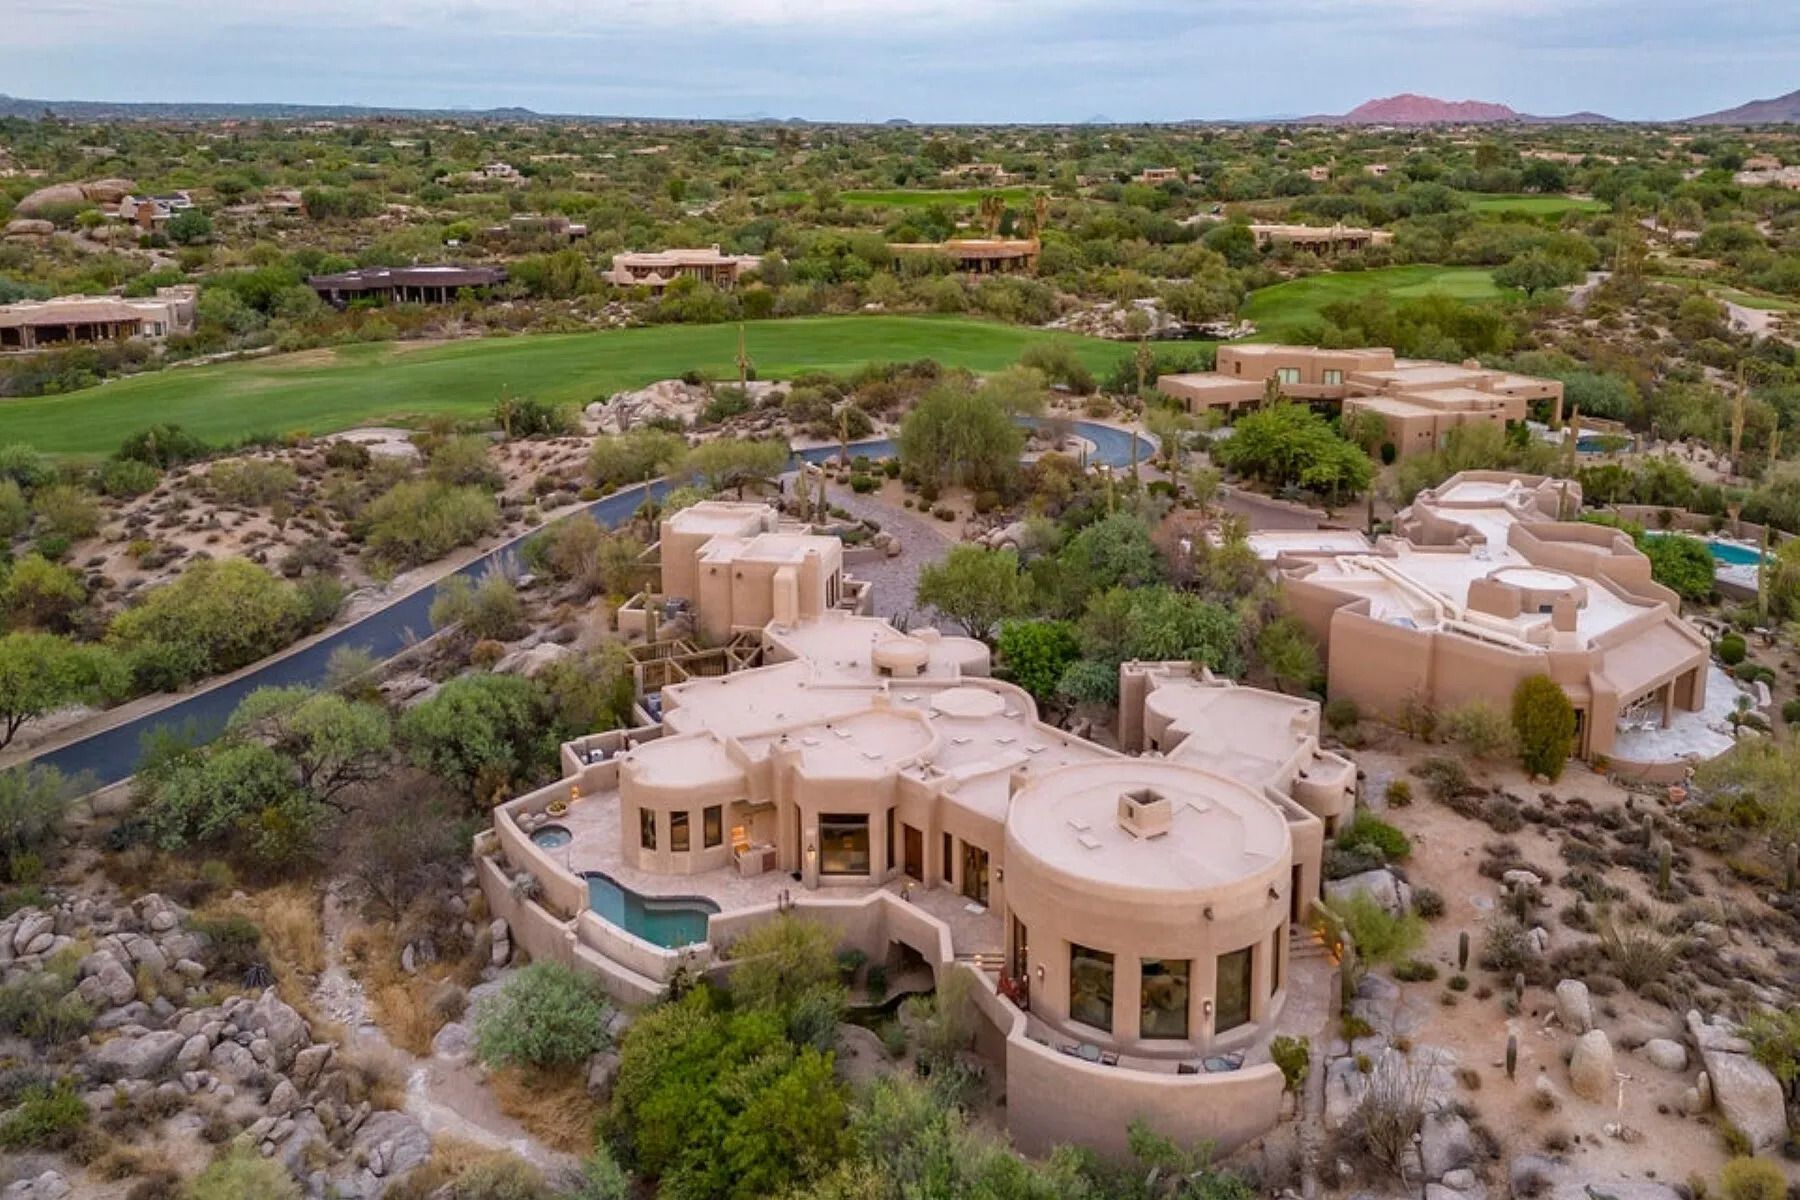 Будинок у пустелі - продають житло в глинобитному стилі серед дикої природи - Нерухомість